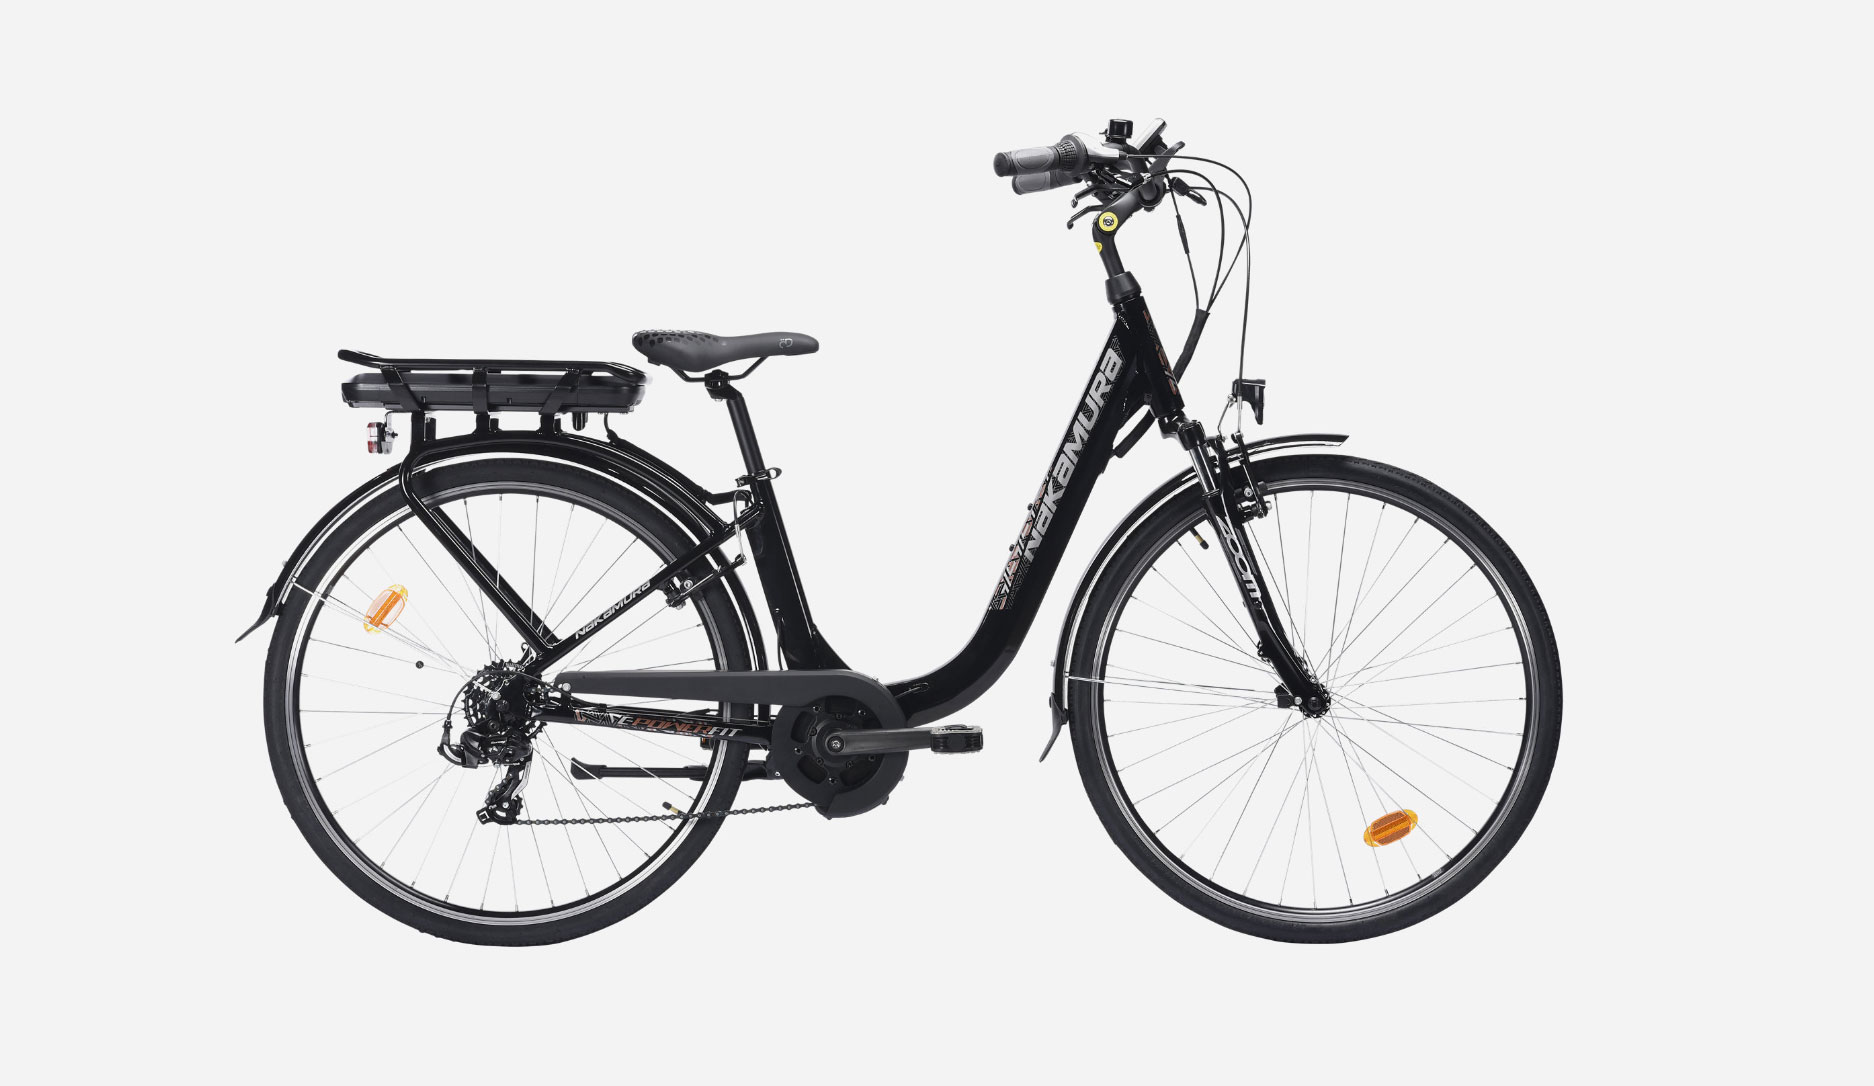 Vendu par Intersport, ce vélo électrique à moteur central coûte moins de 900 €